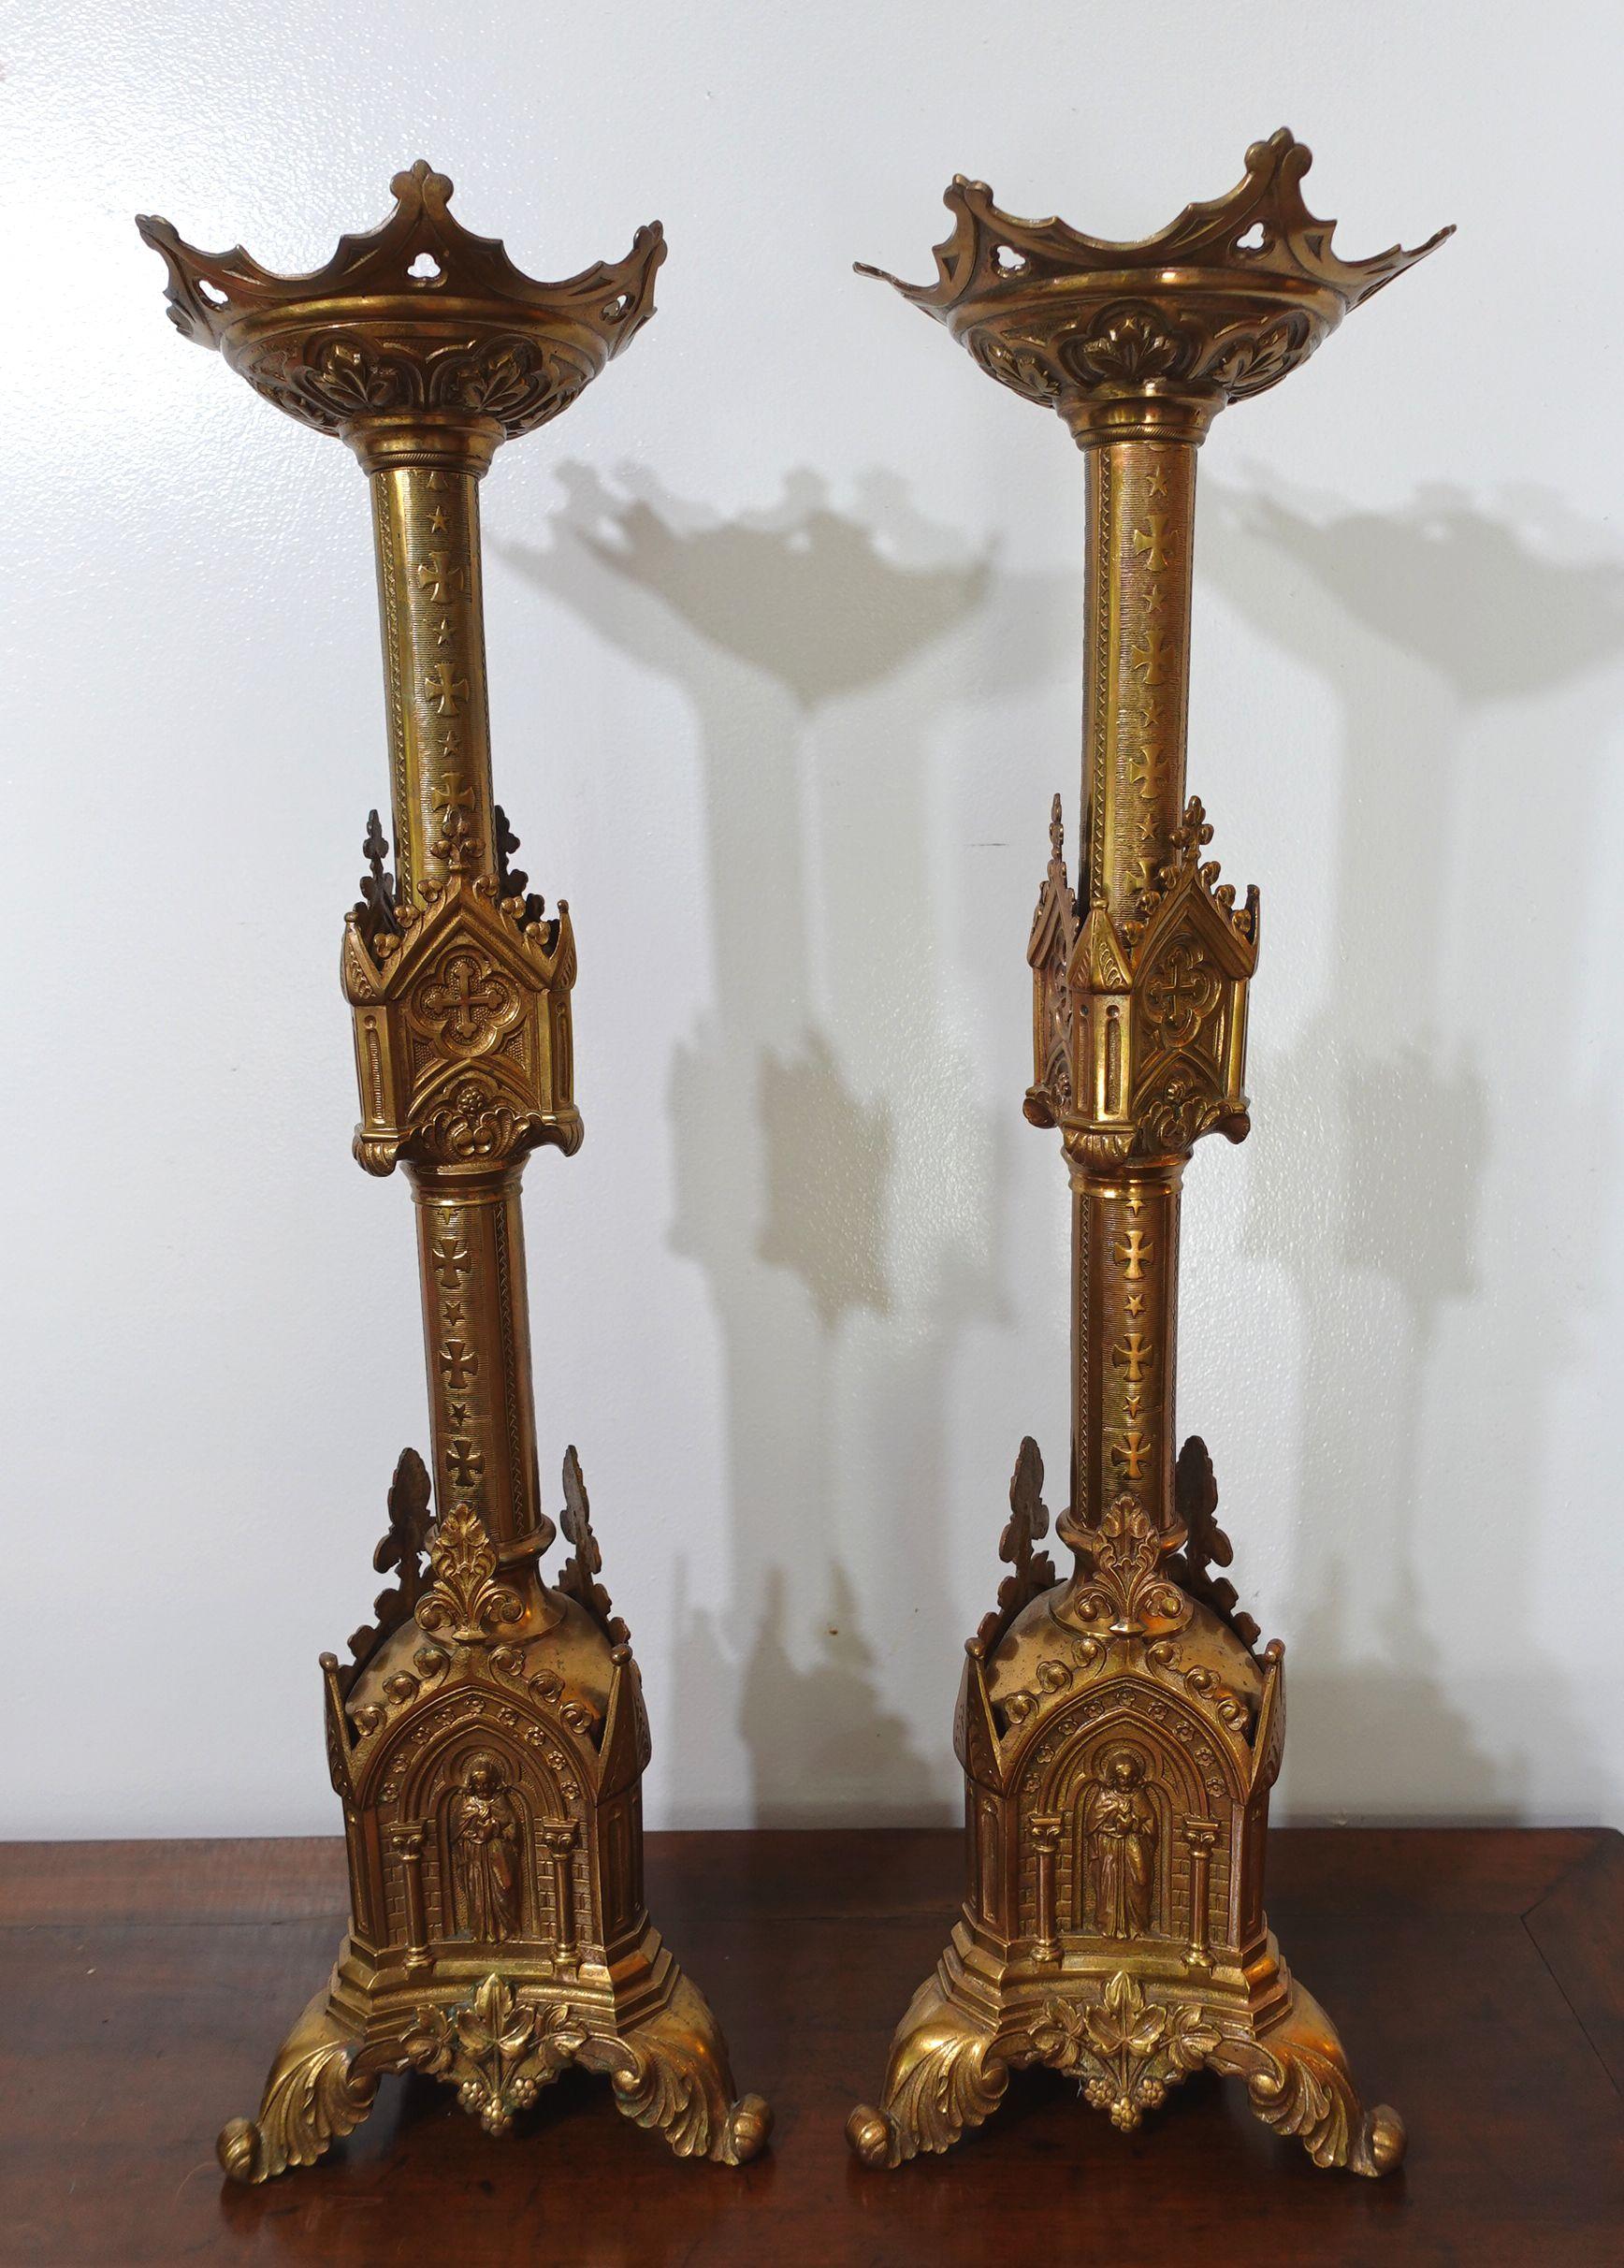 Großes antikes Paar gotischer Kathedralen-Motive aus Messing - Church's/Altar-Kerzenhalter mit gotischen architektonischen Designelementen.
Ric.0044.
 